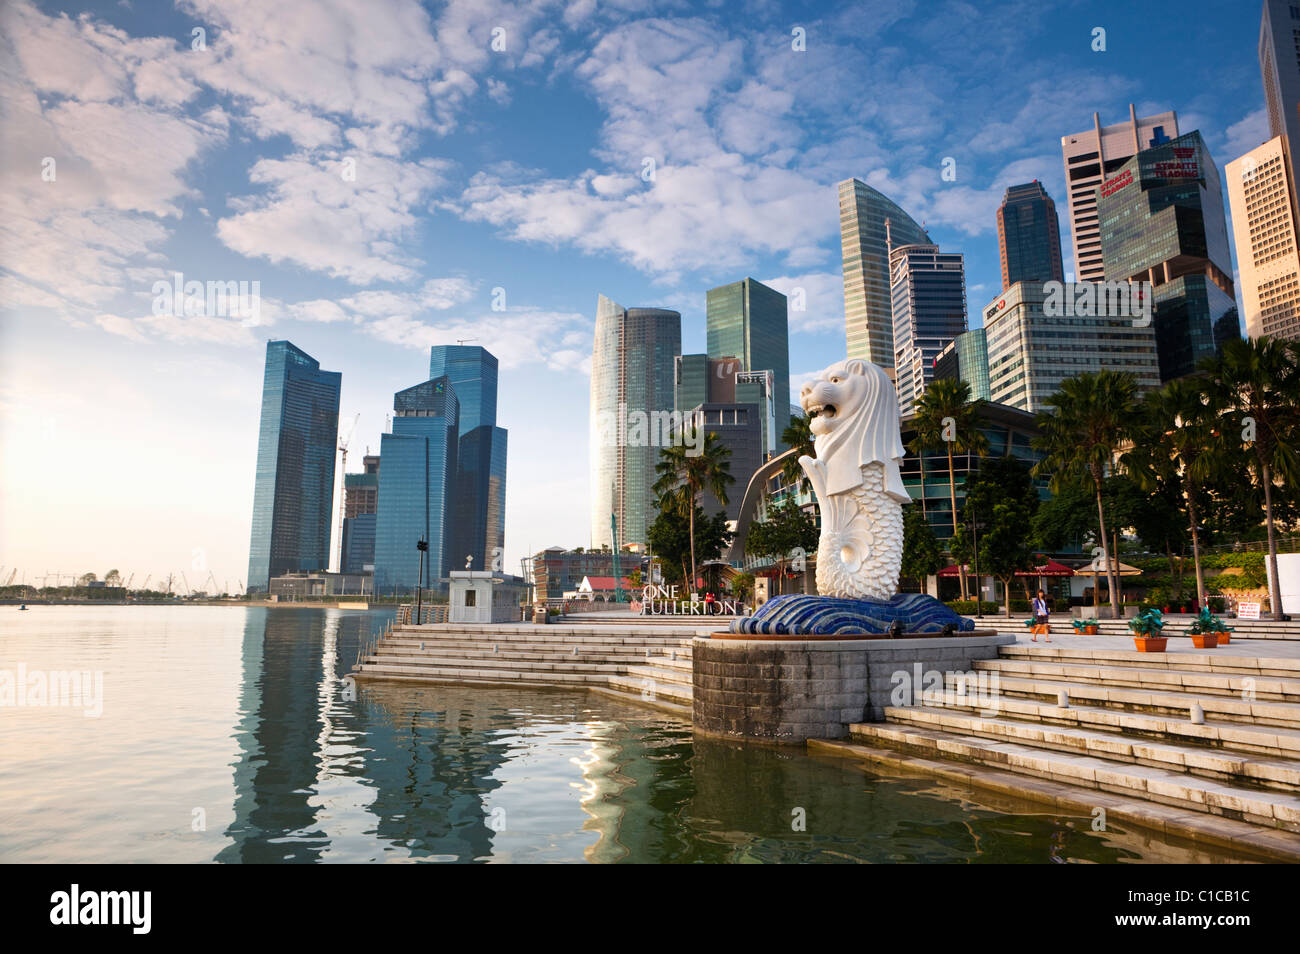 La statue du Merlion avec la ville en arrière-plan, Marina Bay, Singapour Banque D'Images